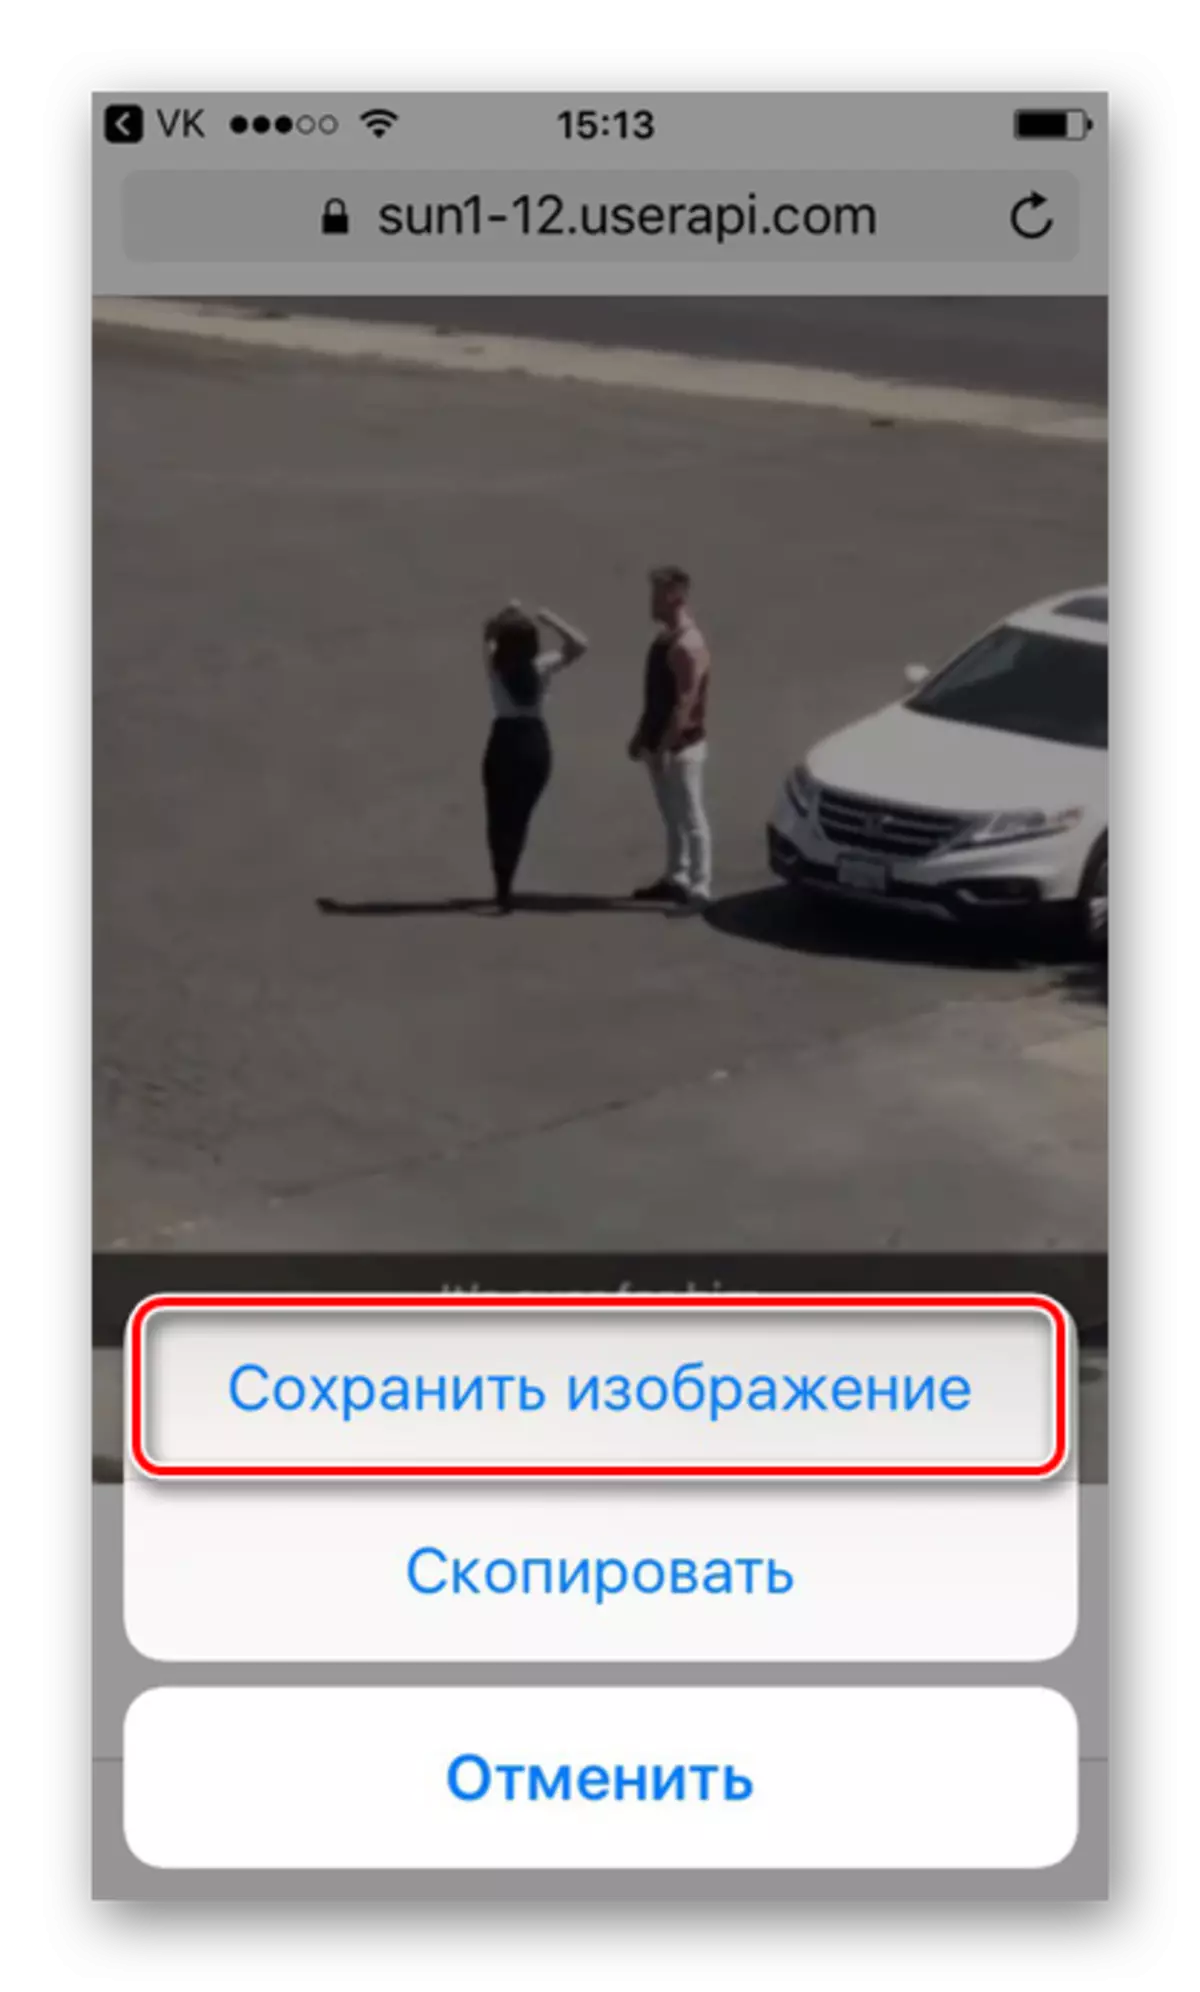 Kuokoa GIF kutoka VKontakte kupitia Safari Browser kwenye iPhone